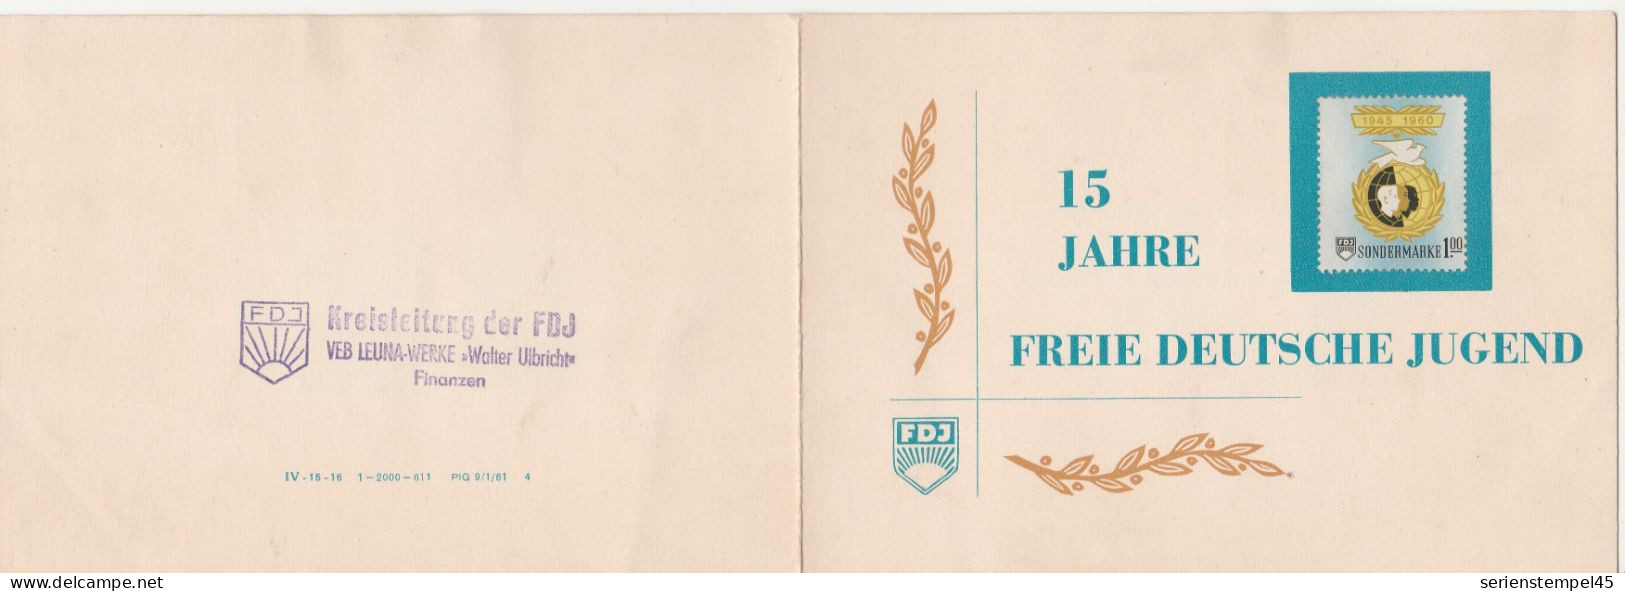 DDR 15 Jahre Freie Deutsche Jugend 1945 - 1960 Sondermarke 1 M 3 Marken FDJ Klappkarte - Brieven En Documenten